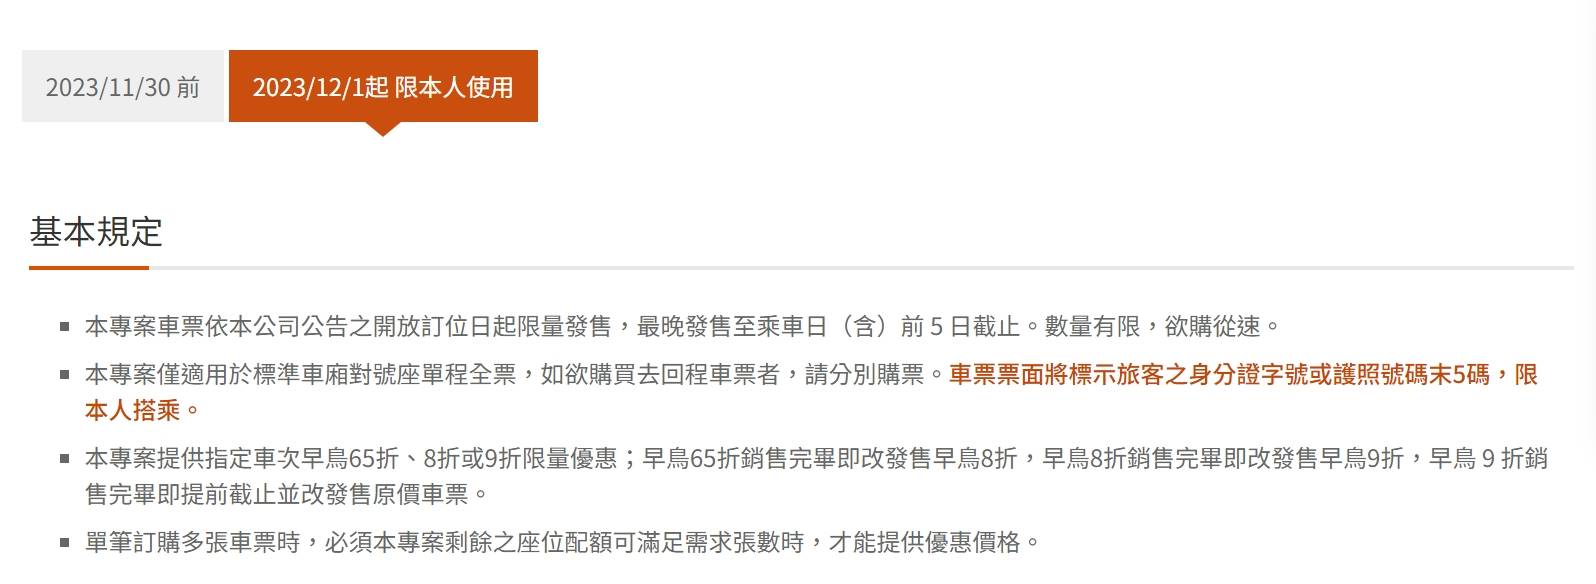 台灣高鐵宣布12月1日起早鳥優惠票限本人使用